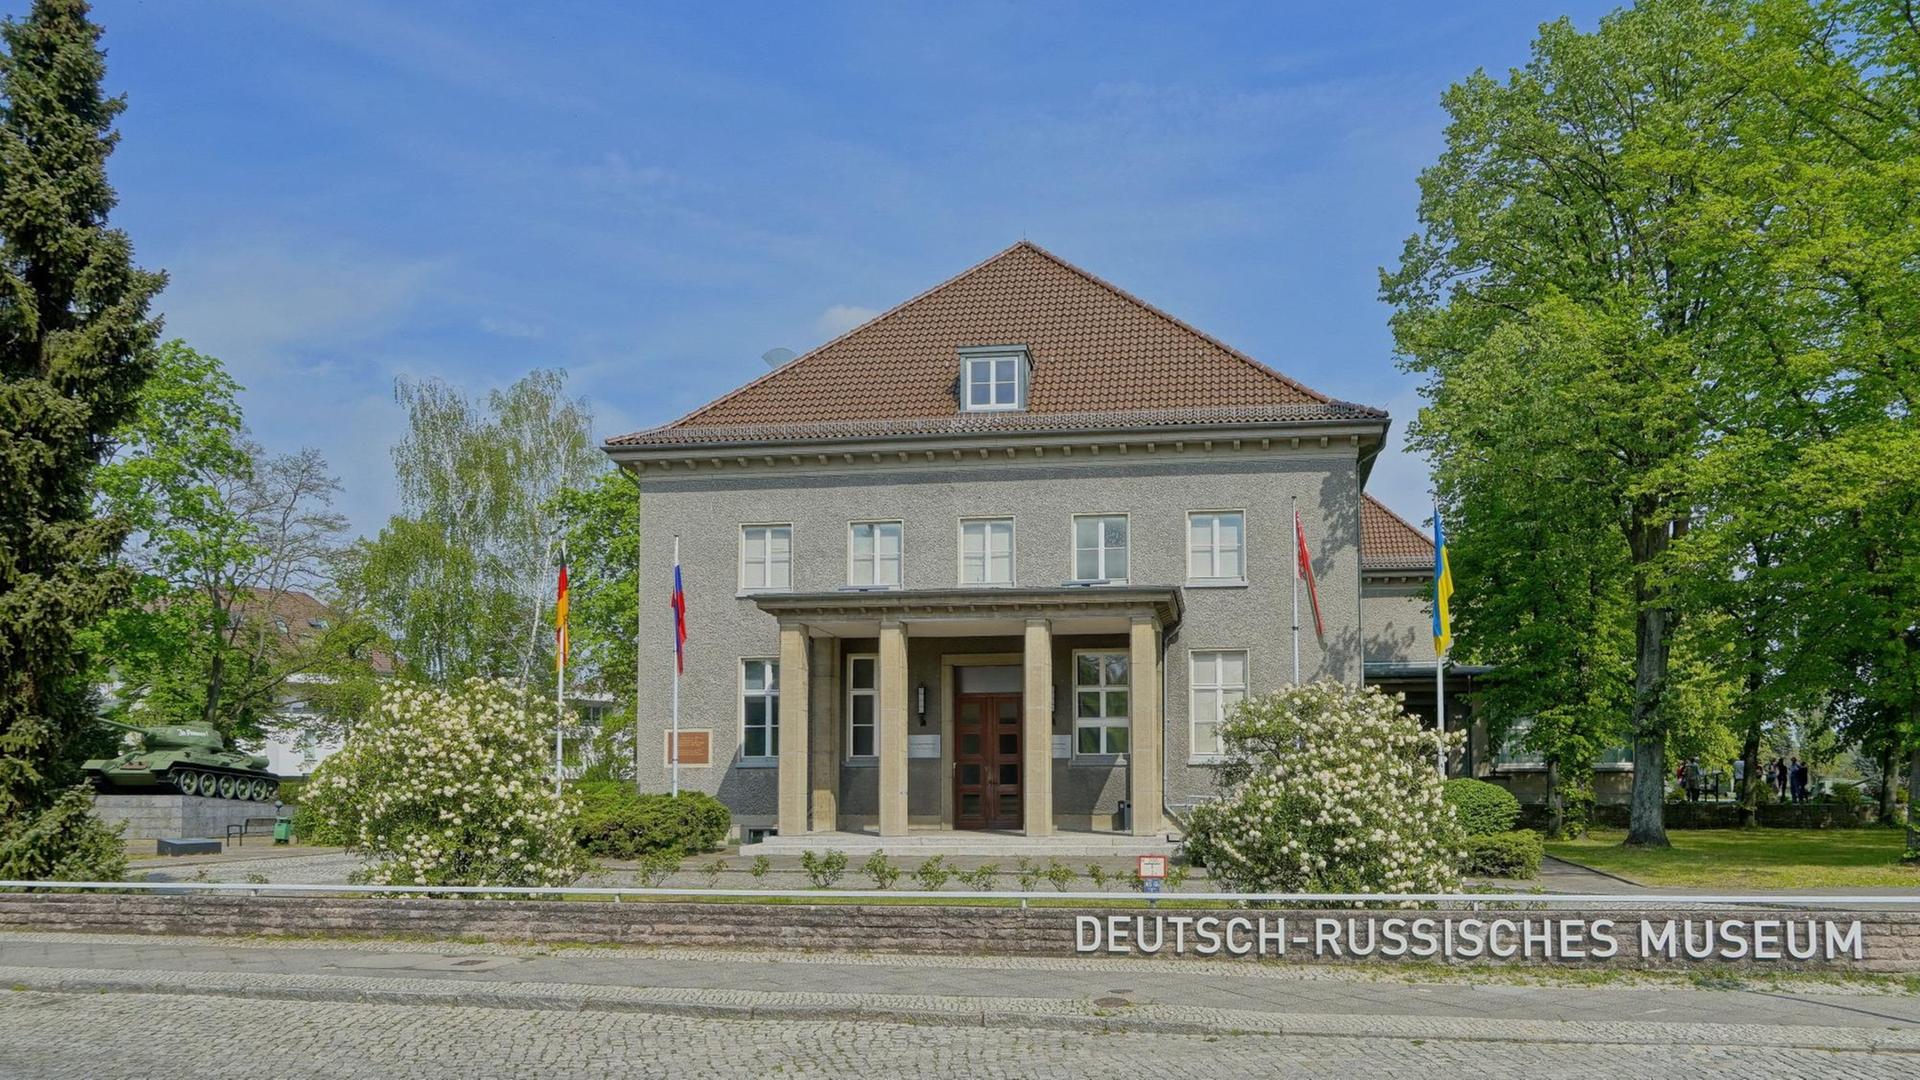 Das Deutsch-Russische Museum in Karlshorst, Berlin. In dem ehemaligen Offizierscasino wurde in der Nacht vom 8. auf den 9. Mai 1945 die bedingungslose Kapitulation der Deutschen Wehrmacht unterschrieben